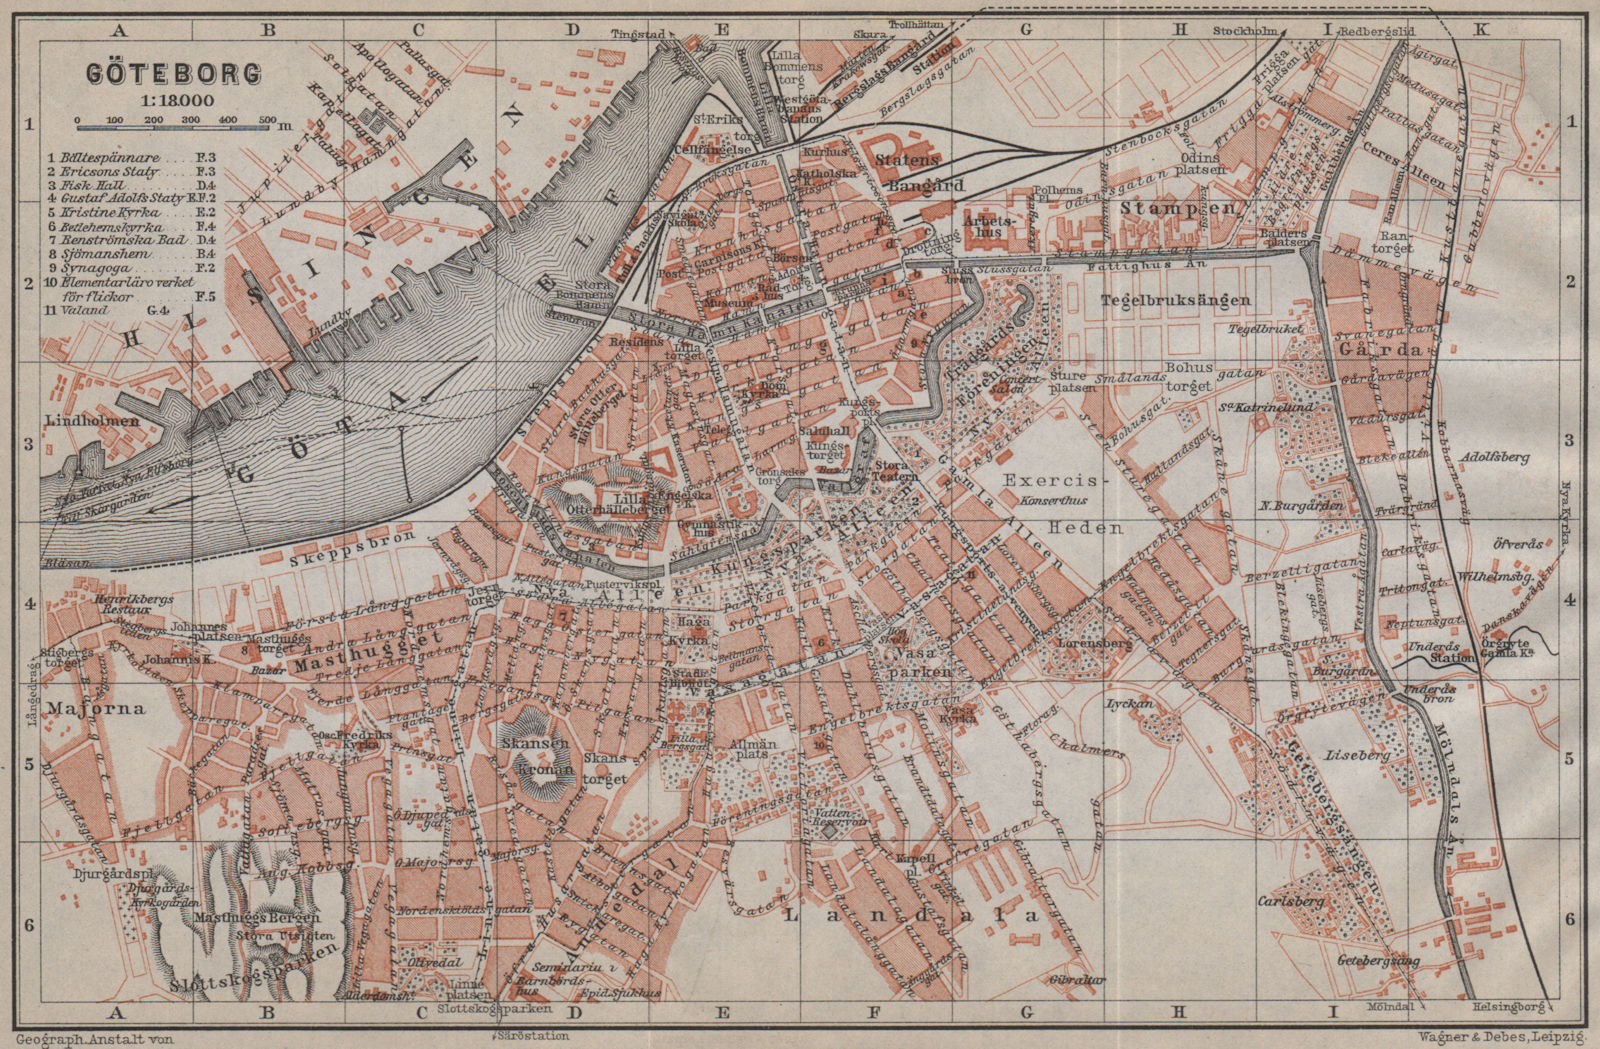 GOTHENBURG GÖTEBORG antique town city stadsplan. Sweden karta 1912 old map